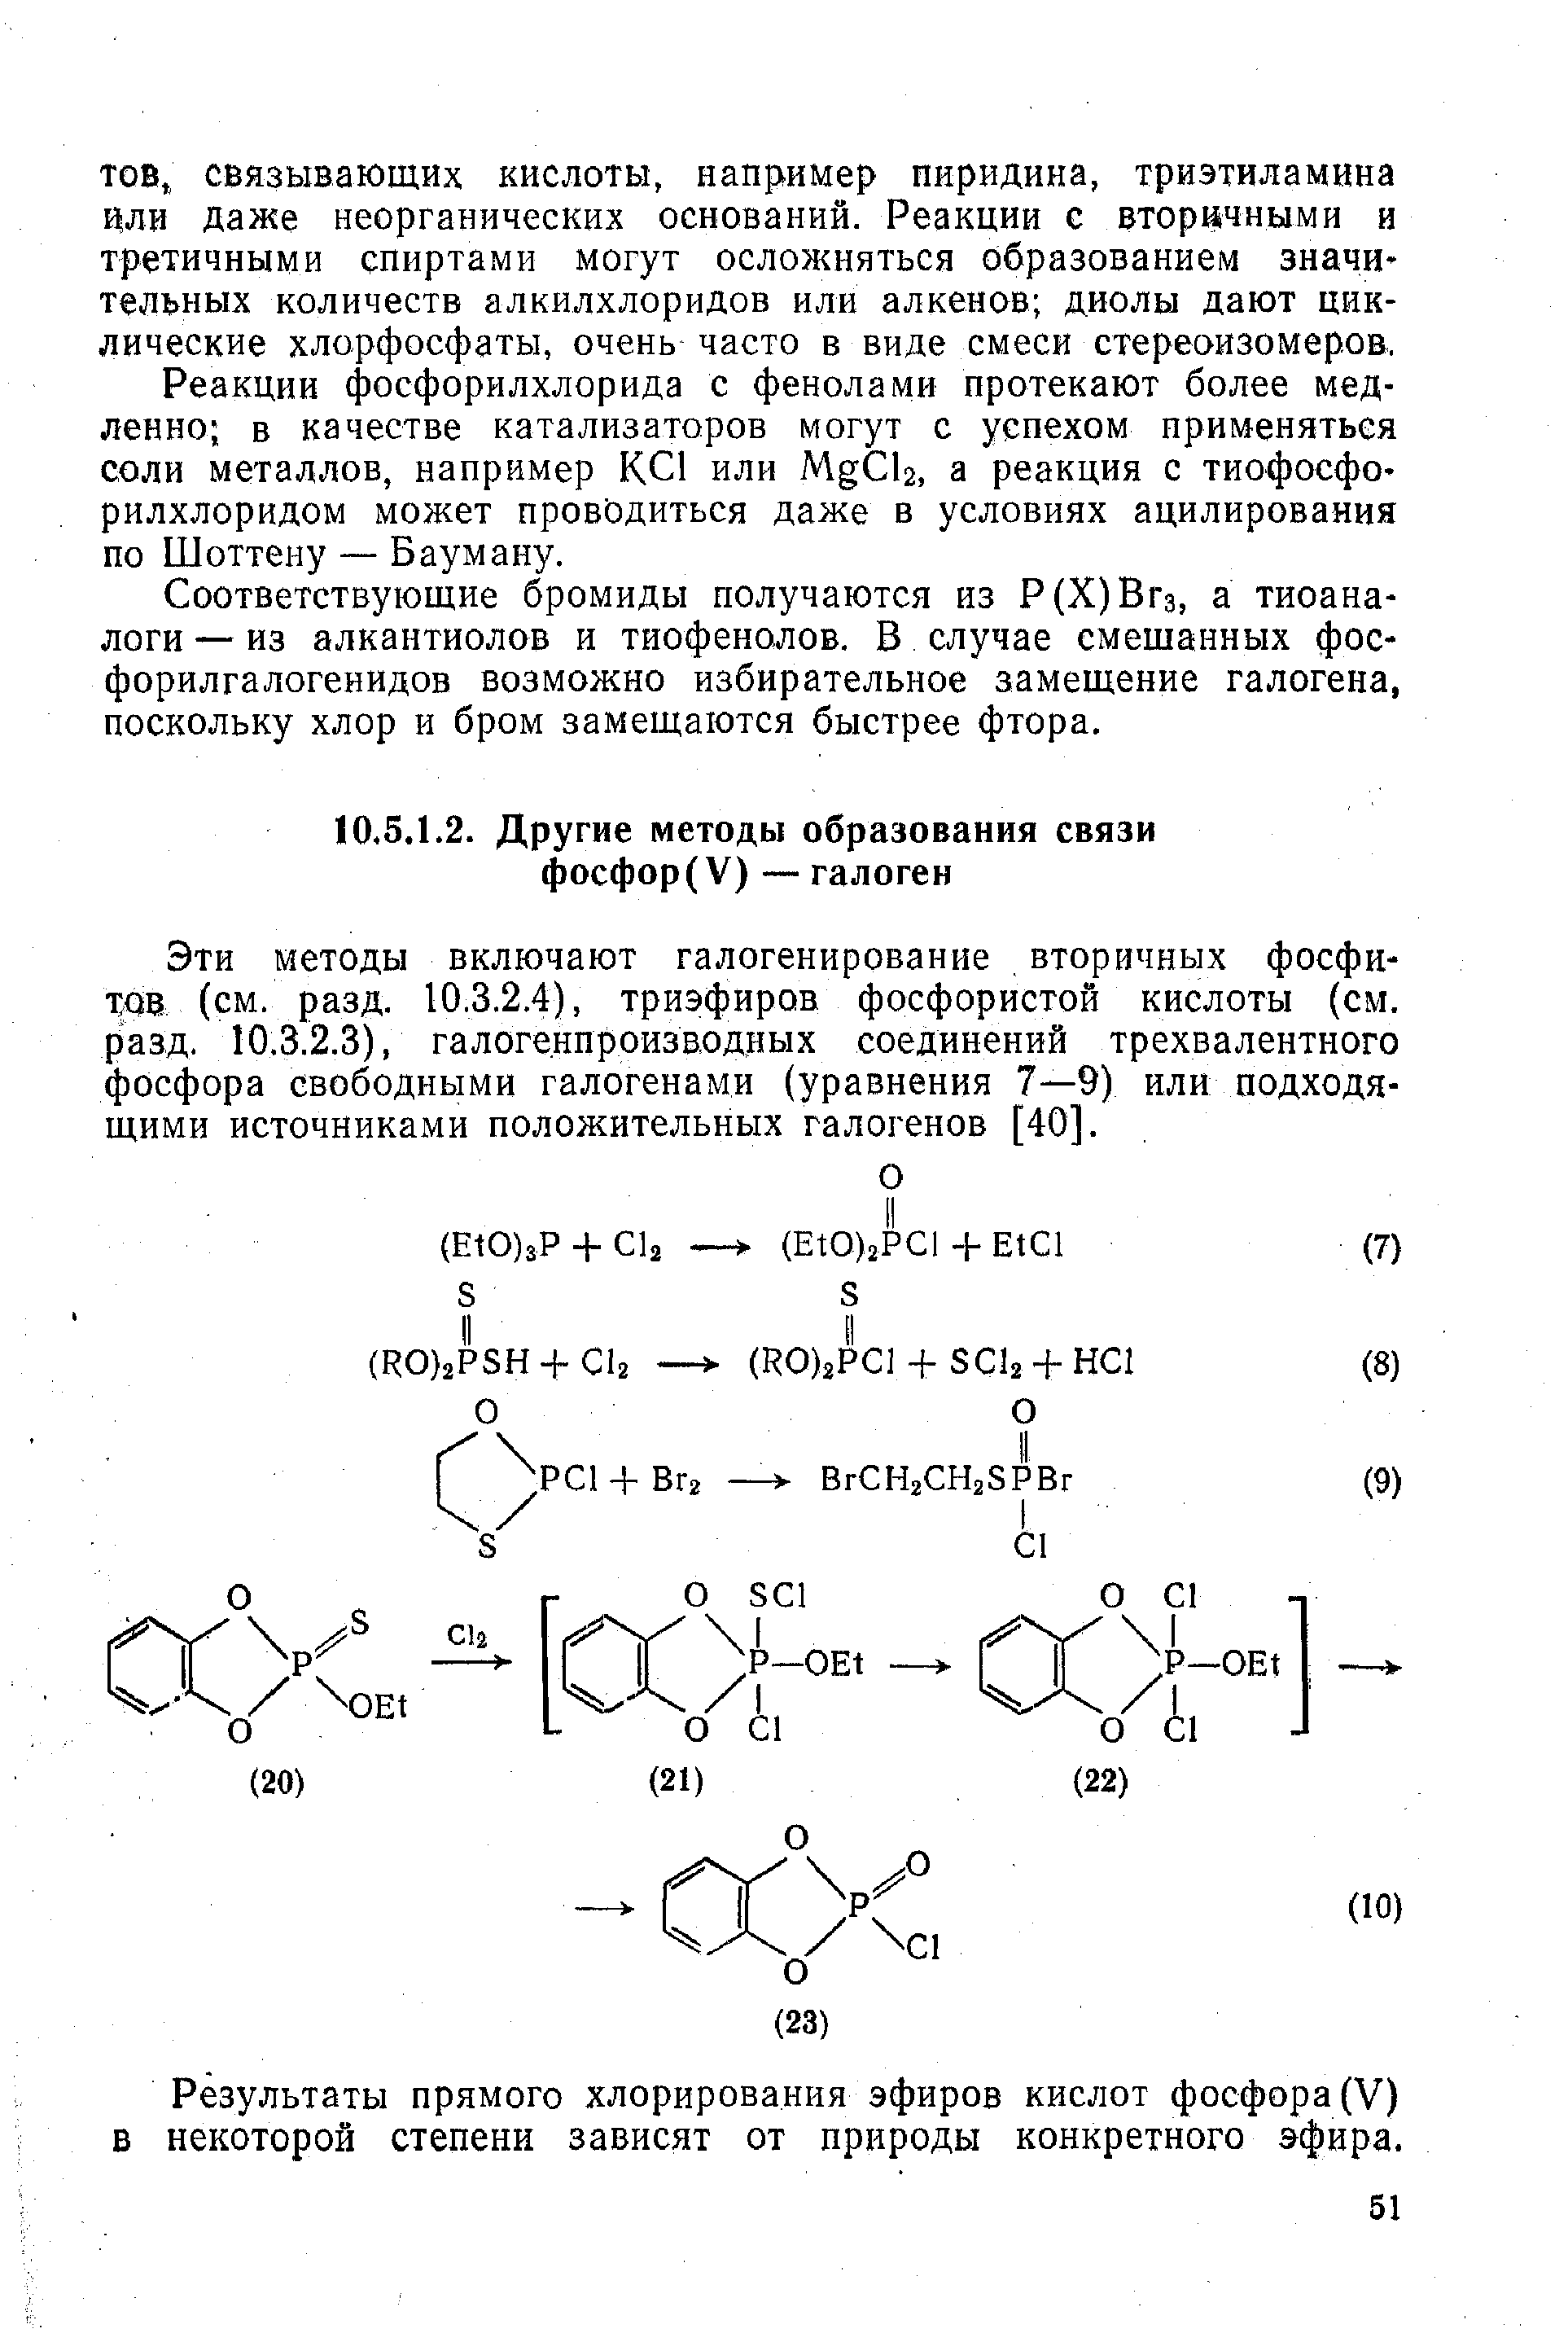 Эти методы включают галогенирование, вторичных фосфиту (см. разд. 10.3.2.4), триэфиров фосфористой кислоты (см. разд. 10.3.2.3), галогенпроизводных соединений трехвалентного фосфора свободными галогенами (уравнения 7—9) или подходящими источниками положительных галогенов [40].